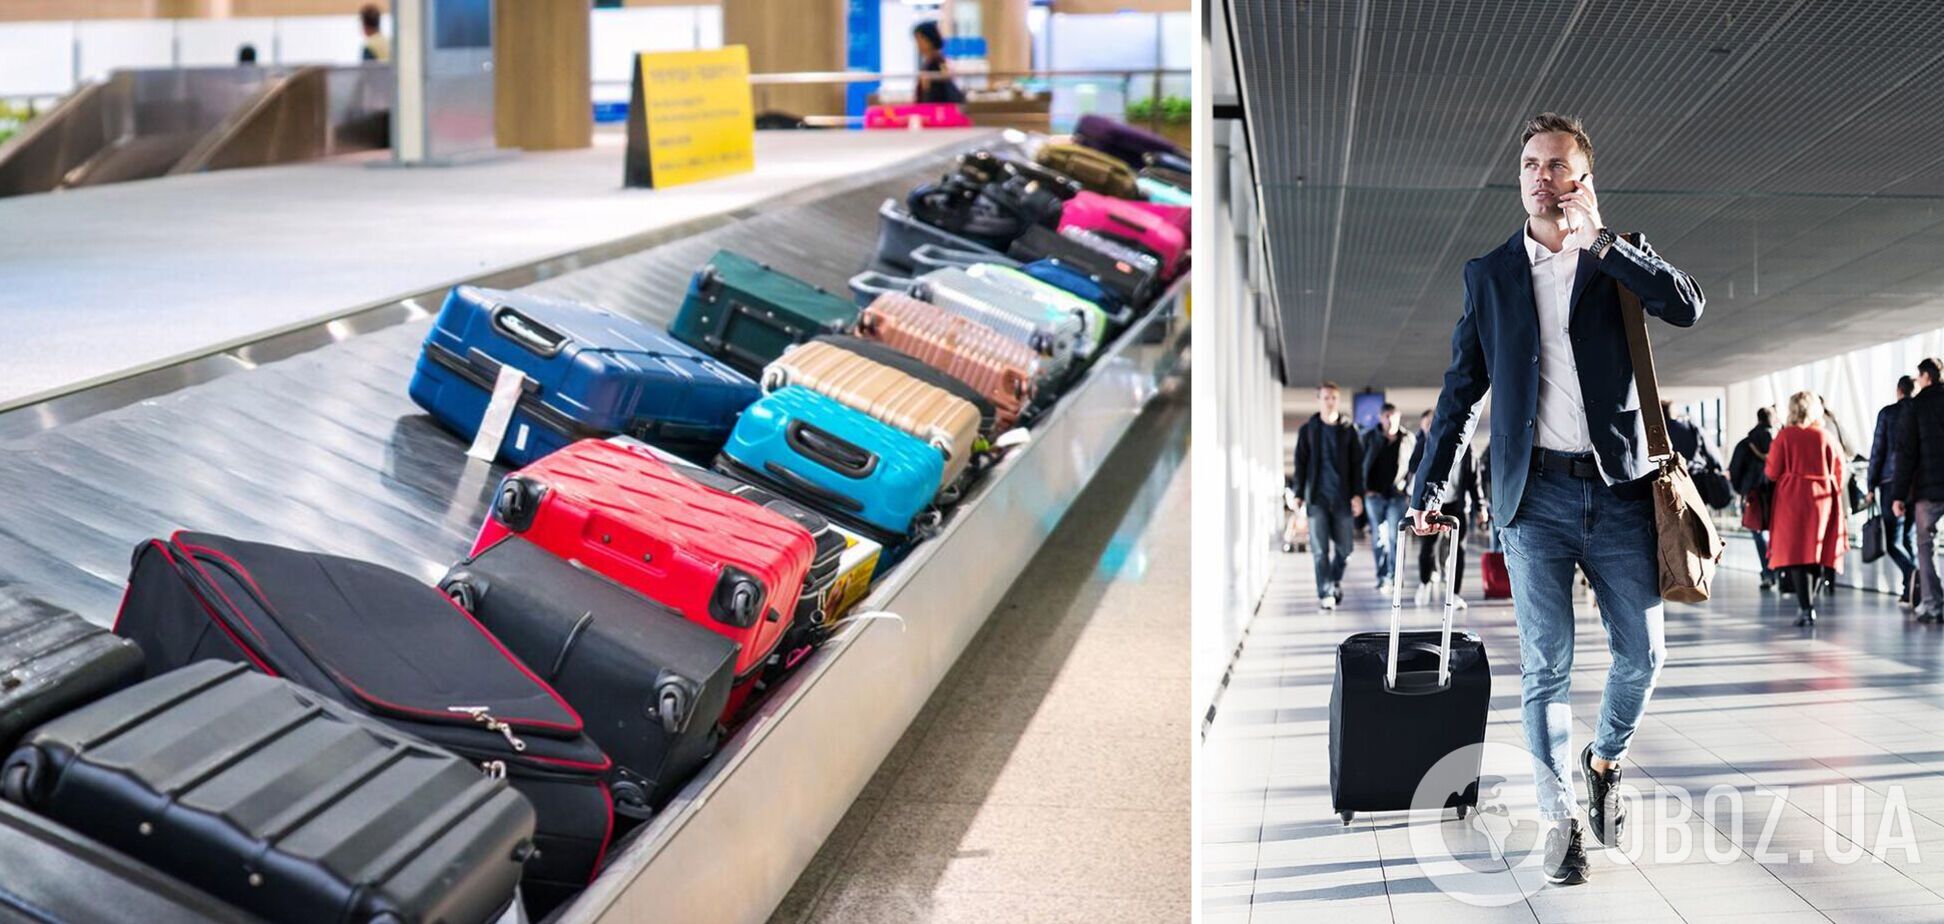 Как сделать, чтобы ваш багаж пришел первым на выходе из самолета: хитрые трюки